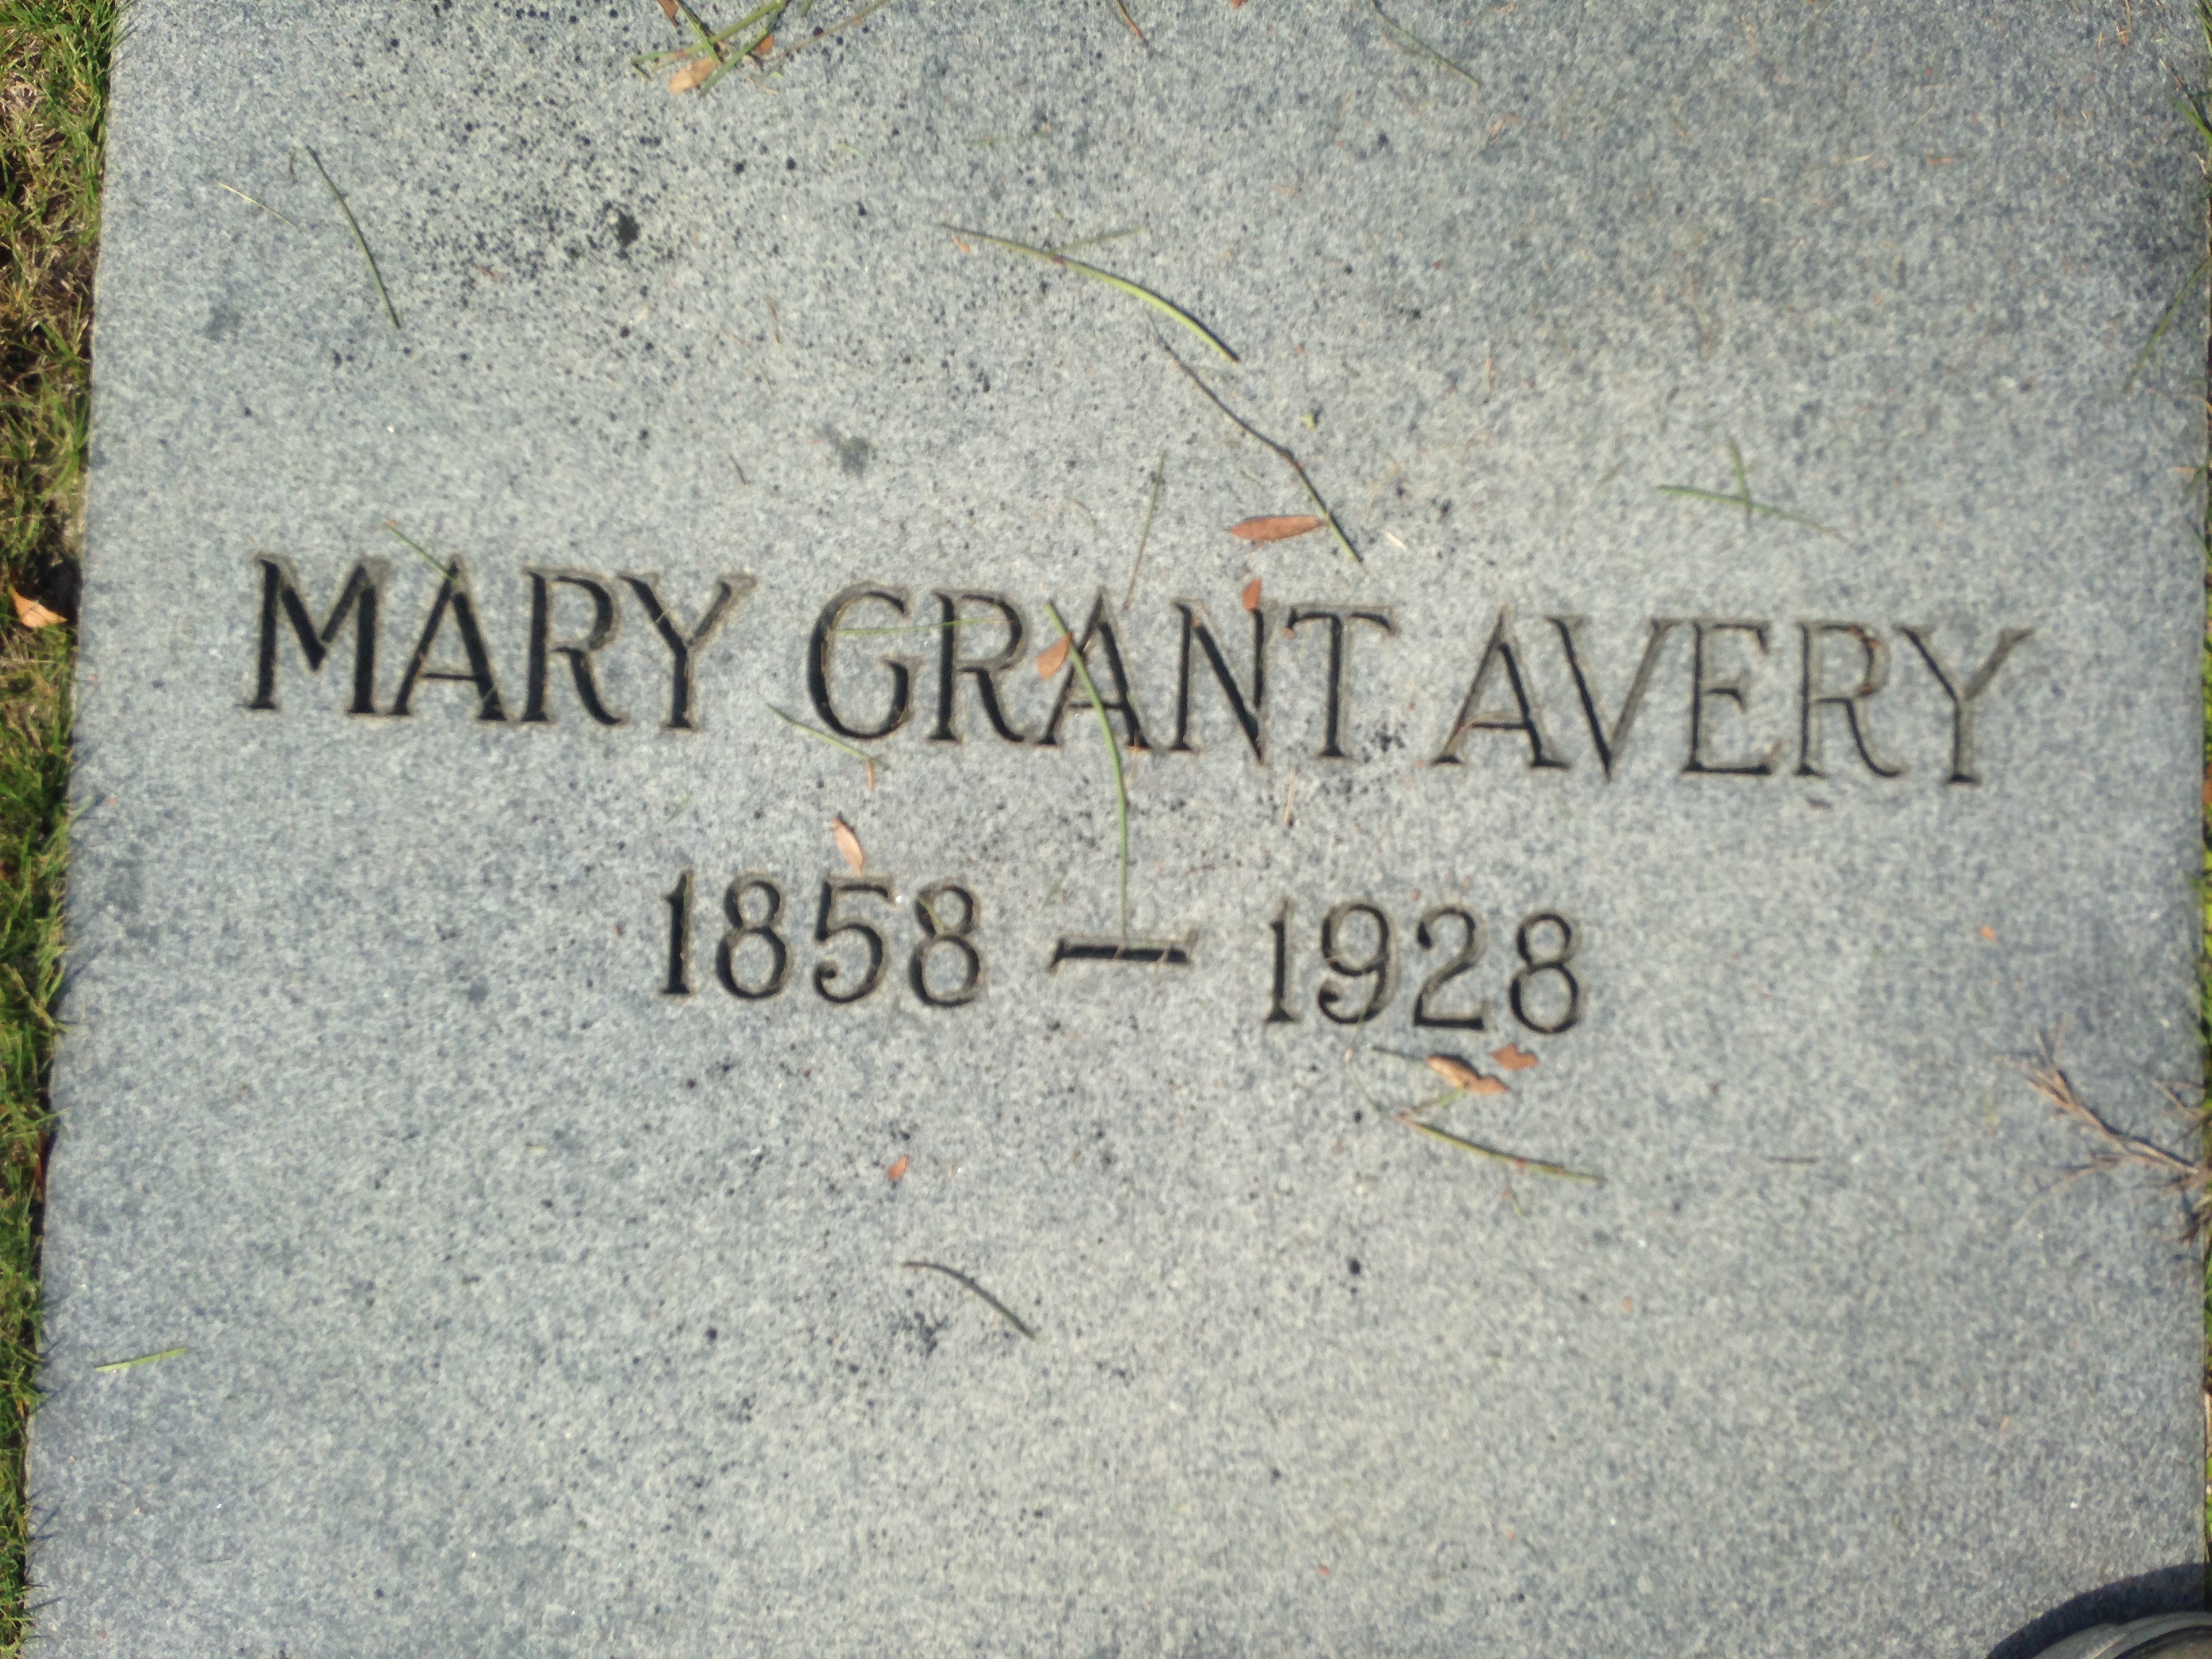 Mary Grant Avery